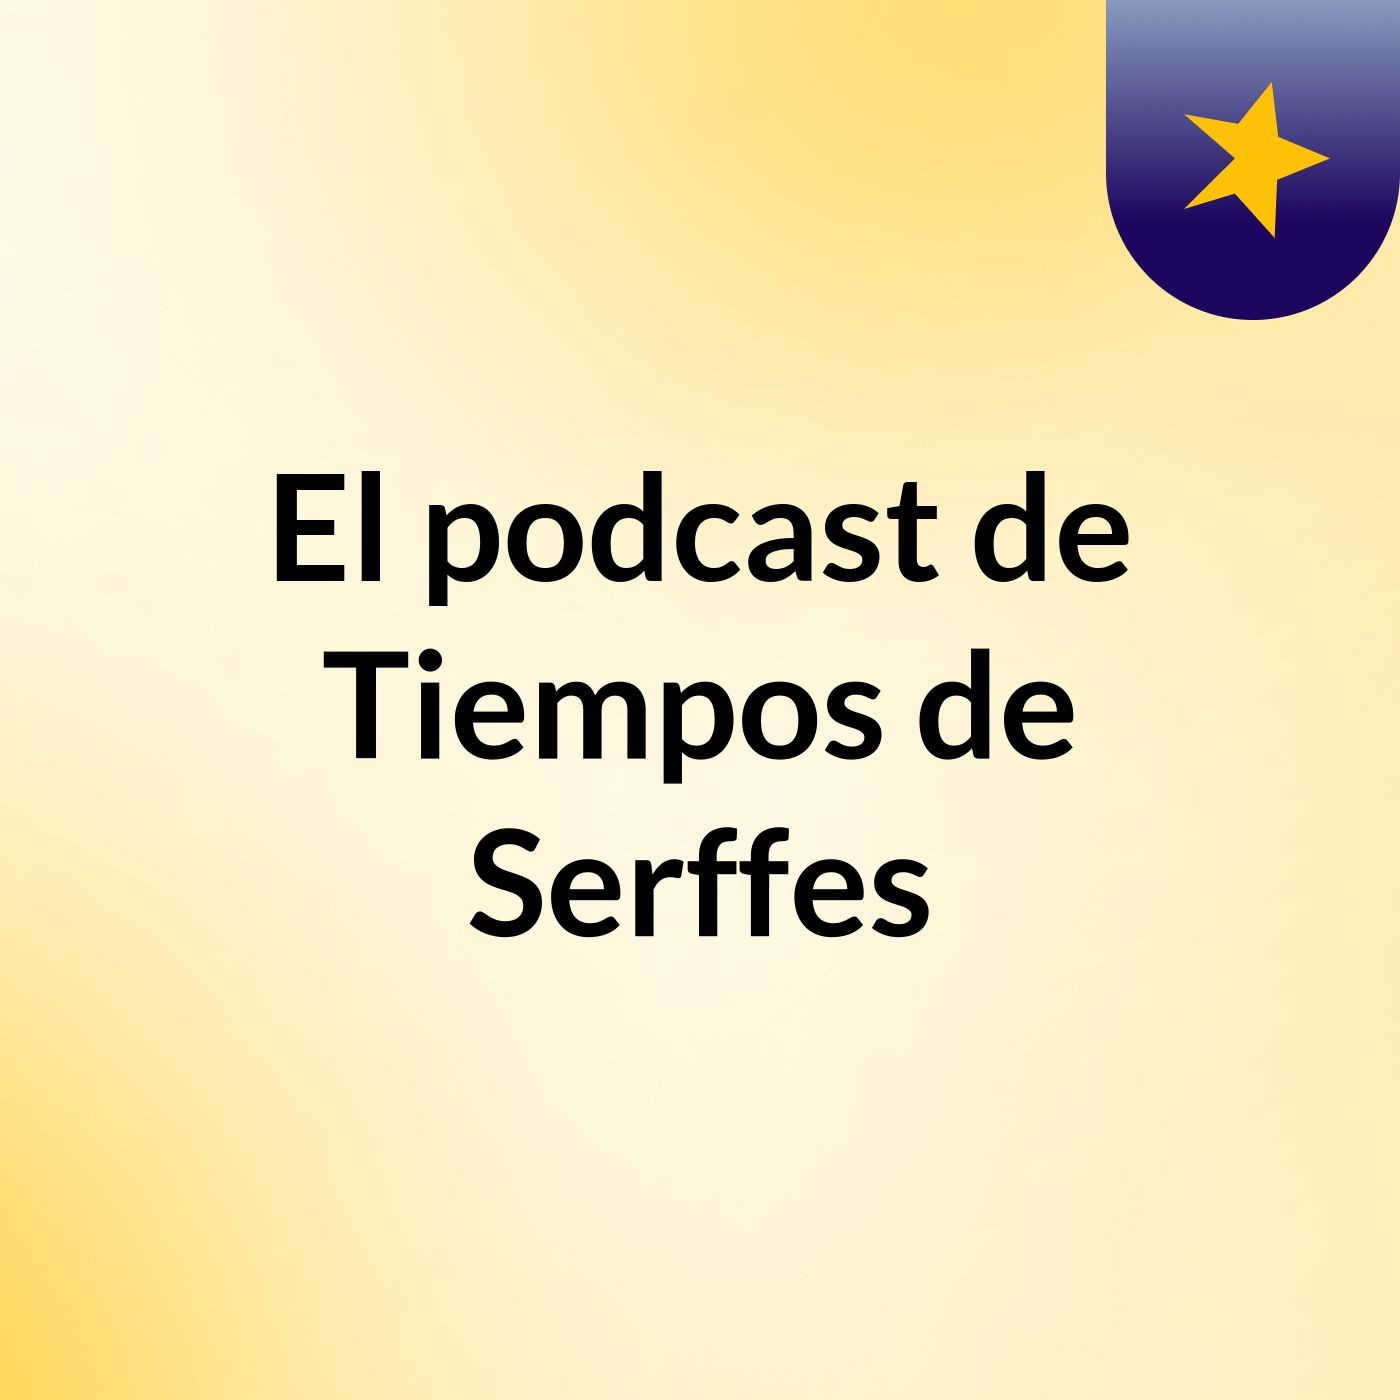 Episodio 37 - El podcast de Tiempos de Serffes